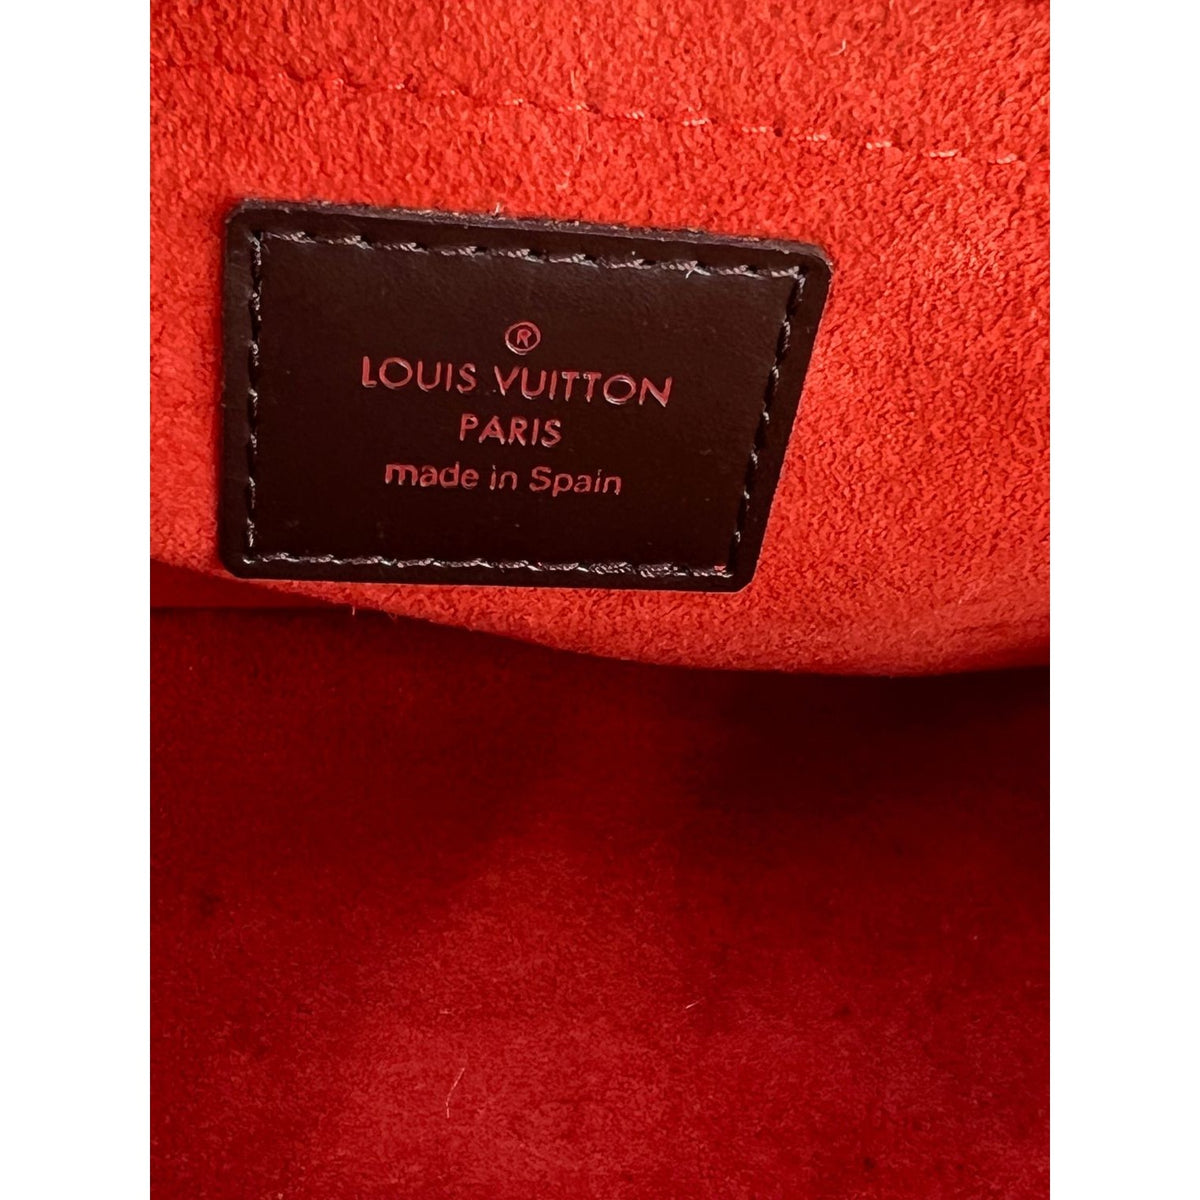 Louis Vuitton Sarria mini#Louis Vuitton Sarria mini#LouisVuitton